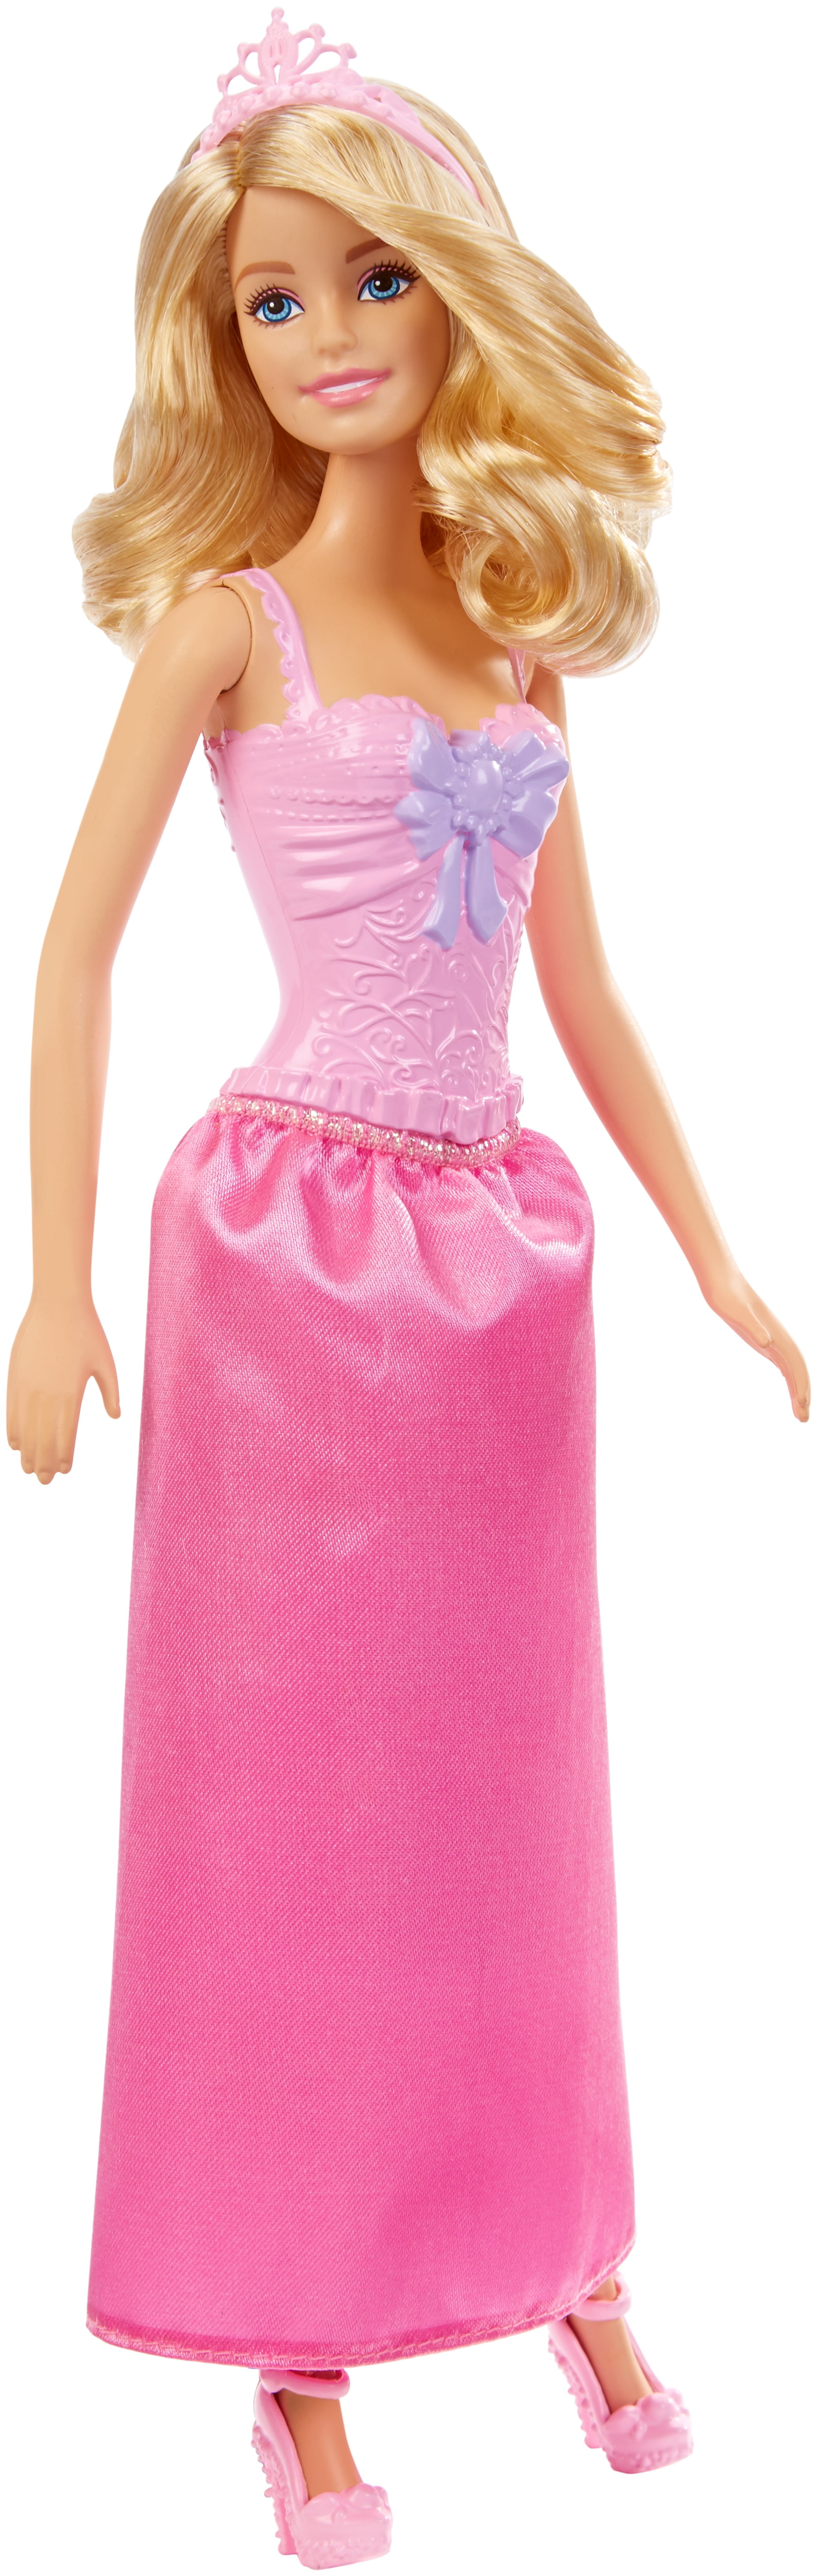 ハウス】 Barbie Princess Doll - Pink and Gold Dress by Barbie :109085175 ...